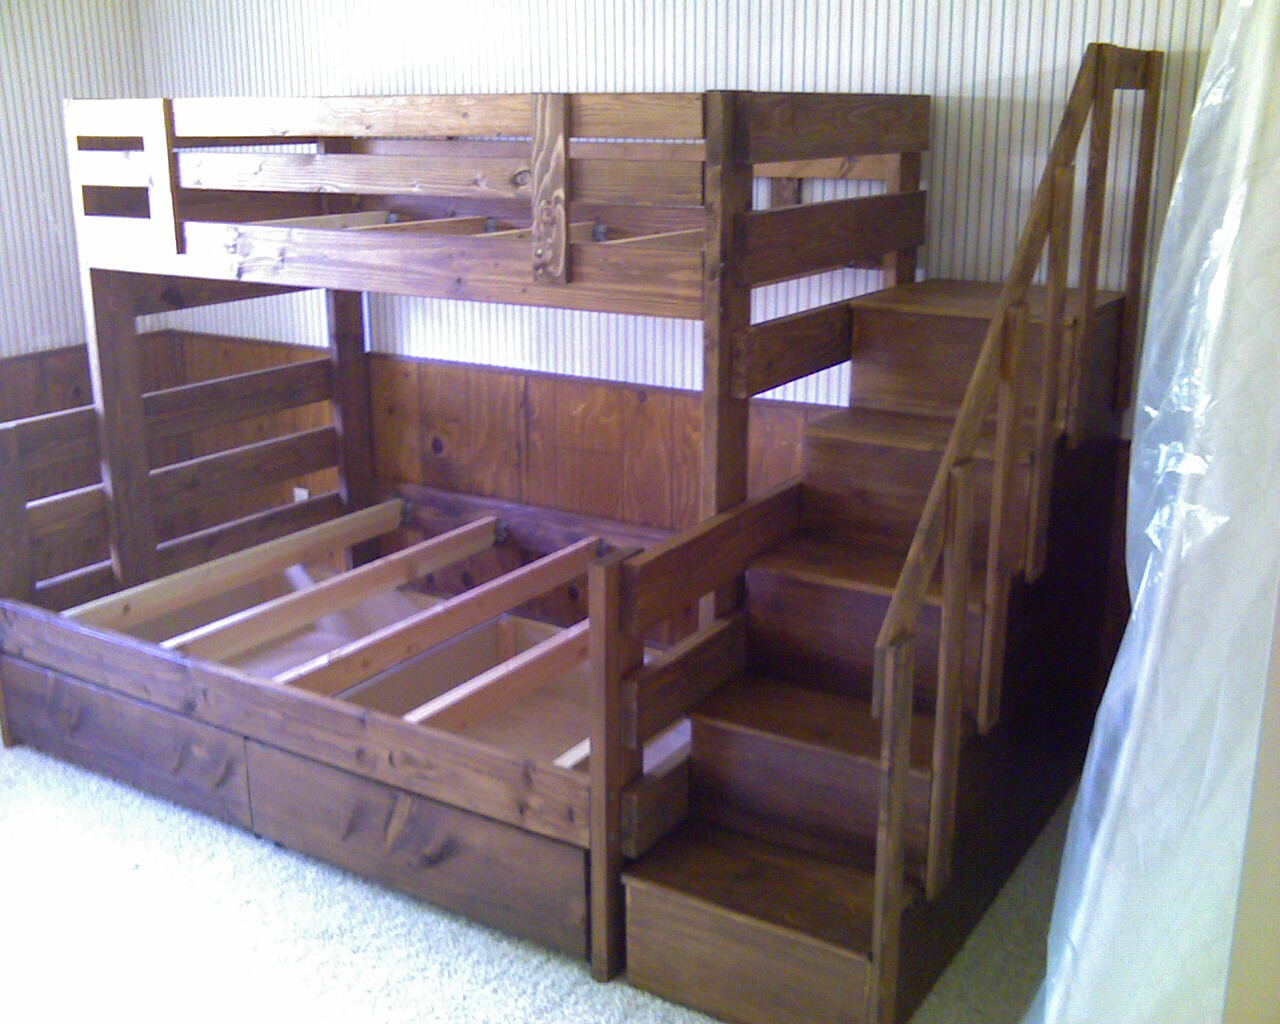 Todd S Custom Bunk Beds The Wood, Custom Made Bunk Beds